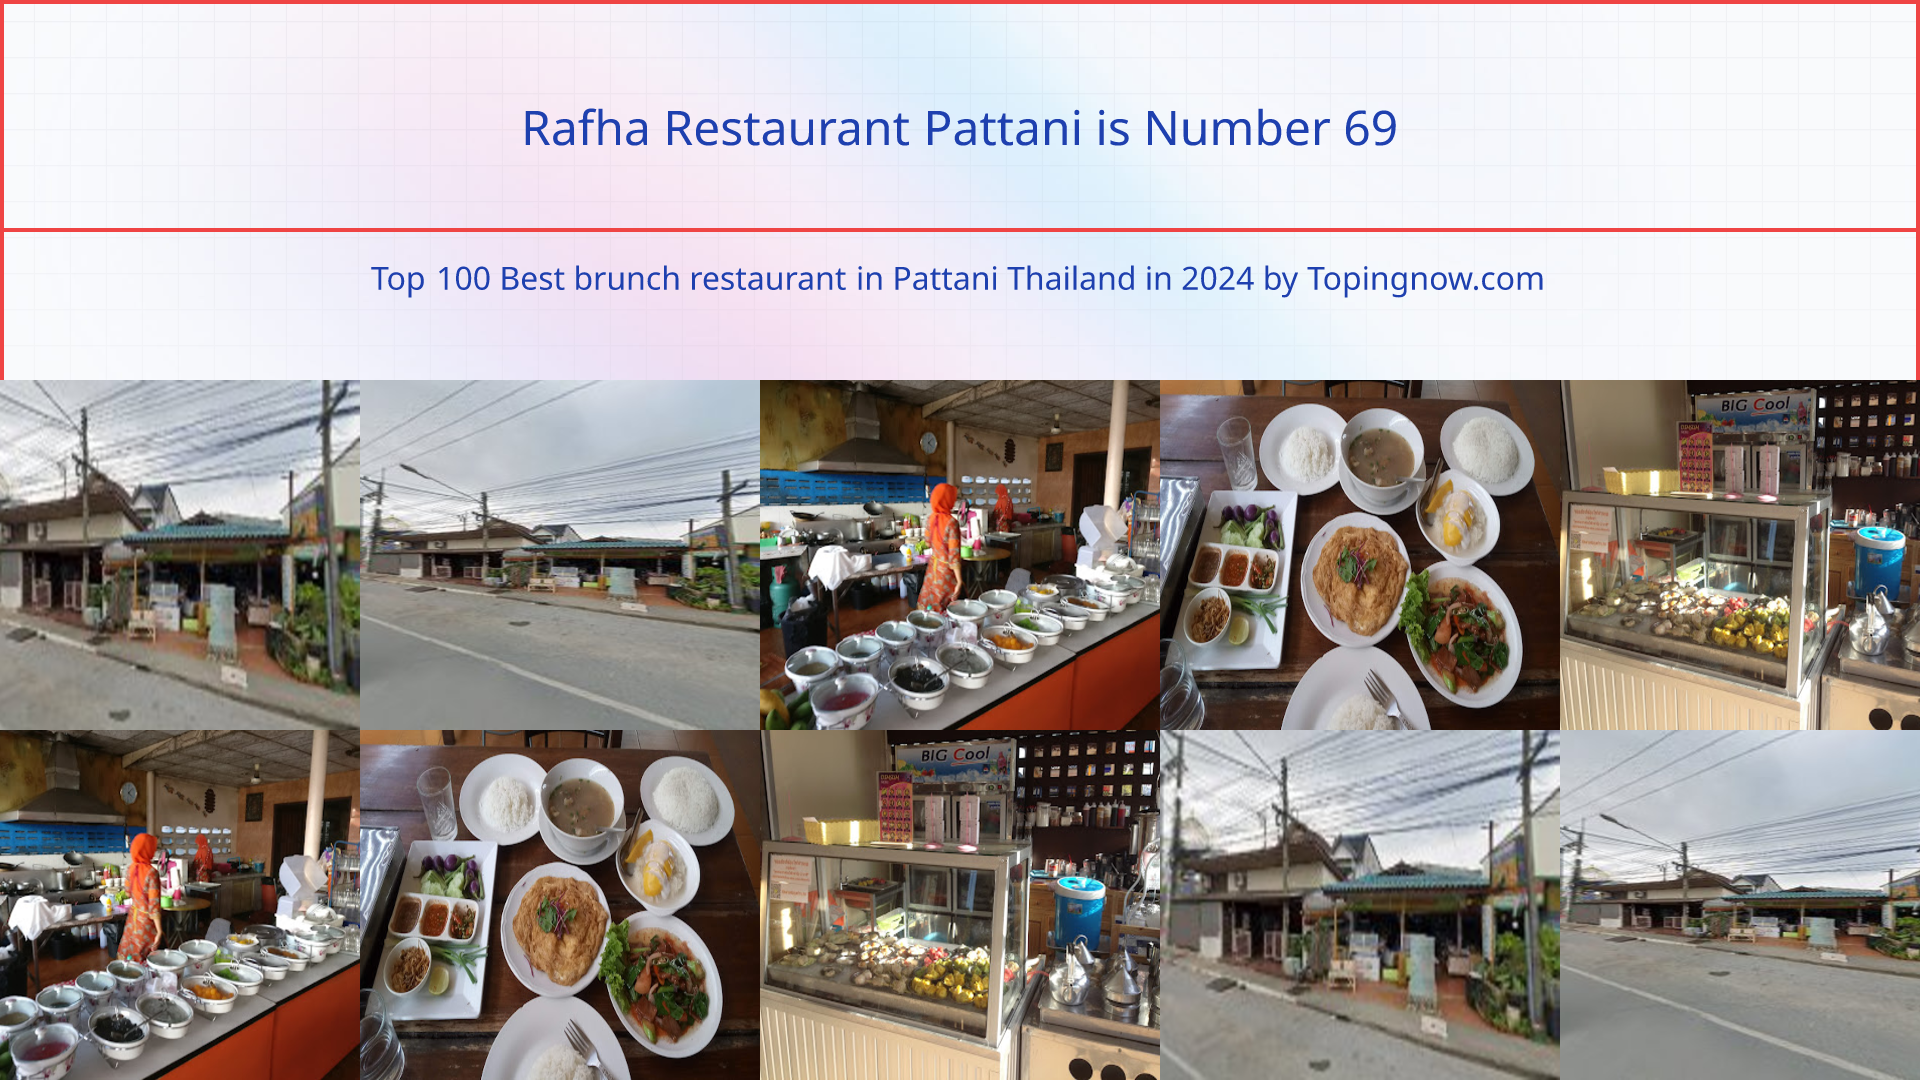 Rafha Restaurant Pattani: Top 100 Best brunch restaurant in Pattani Thailand in 2024